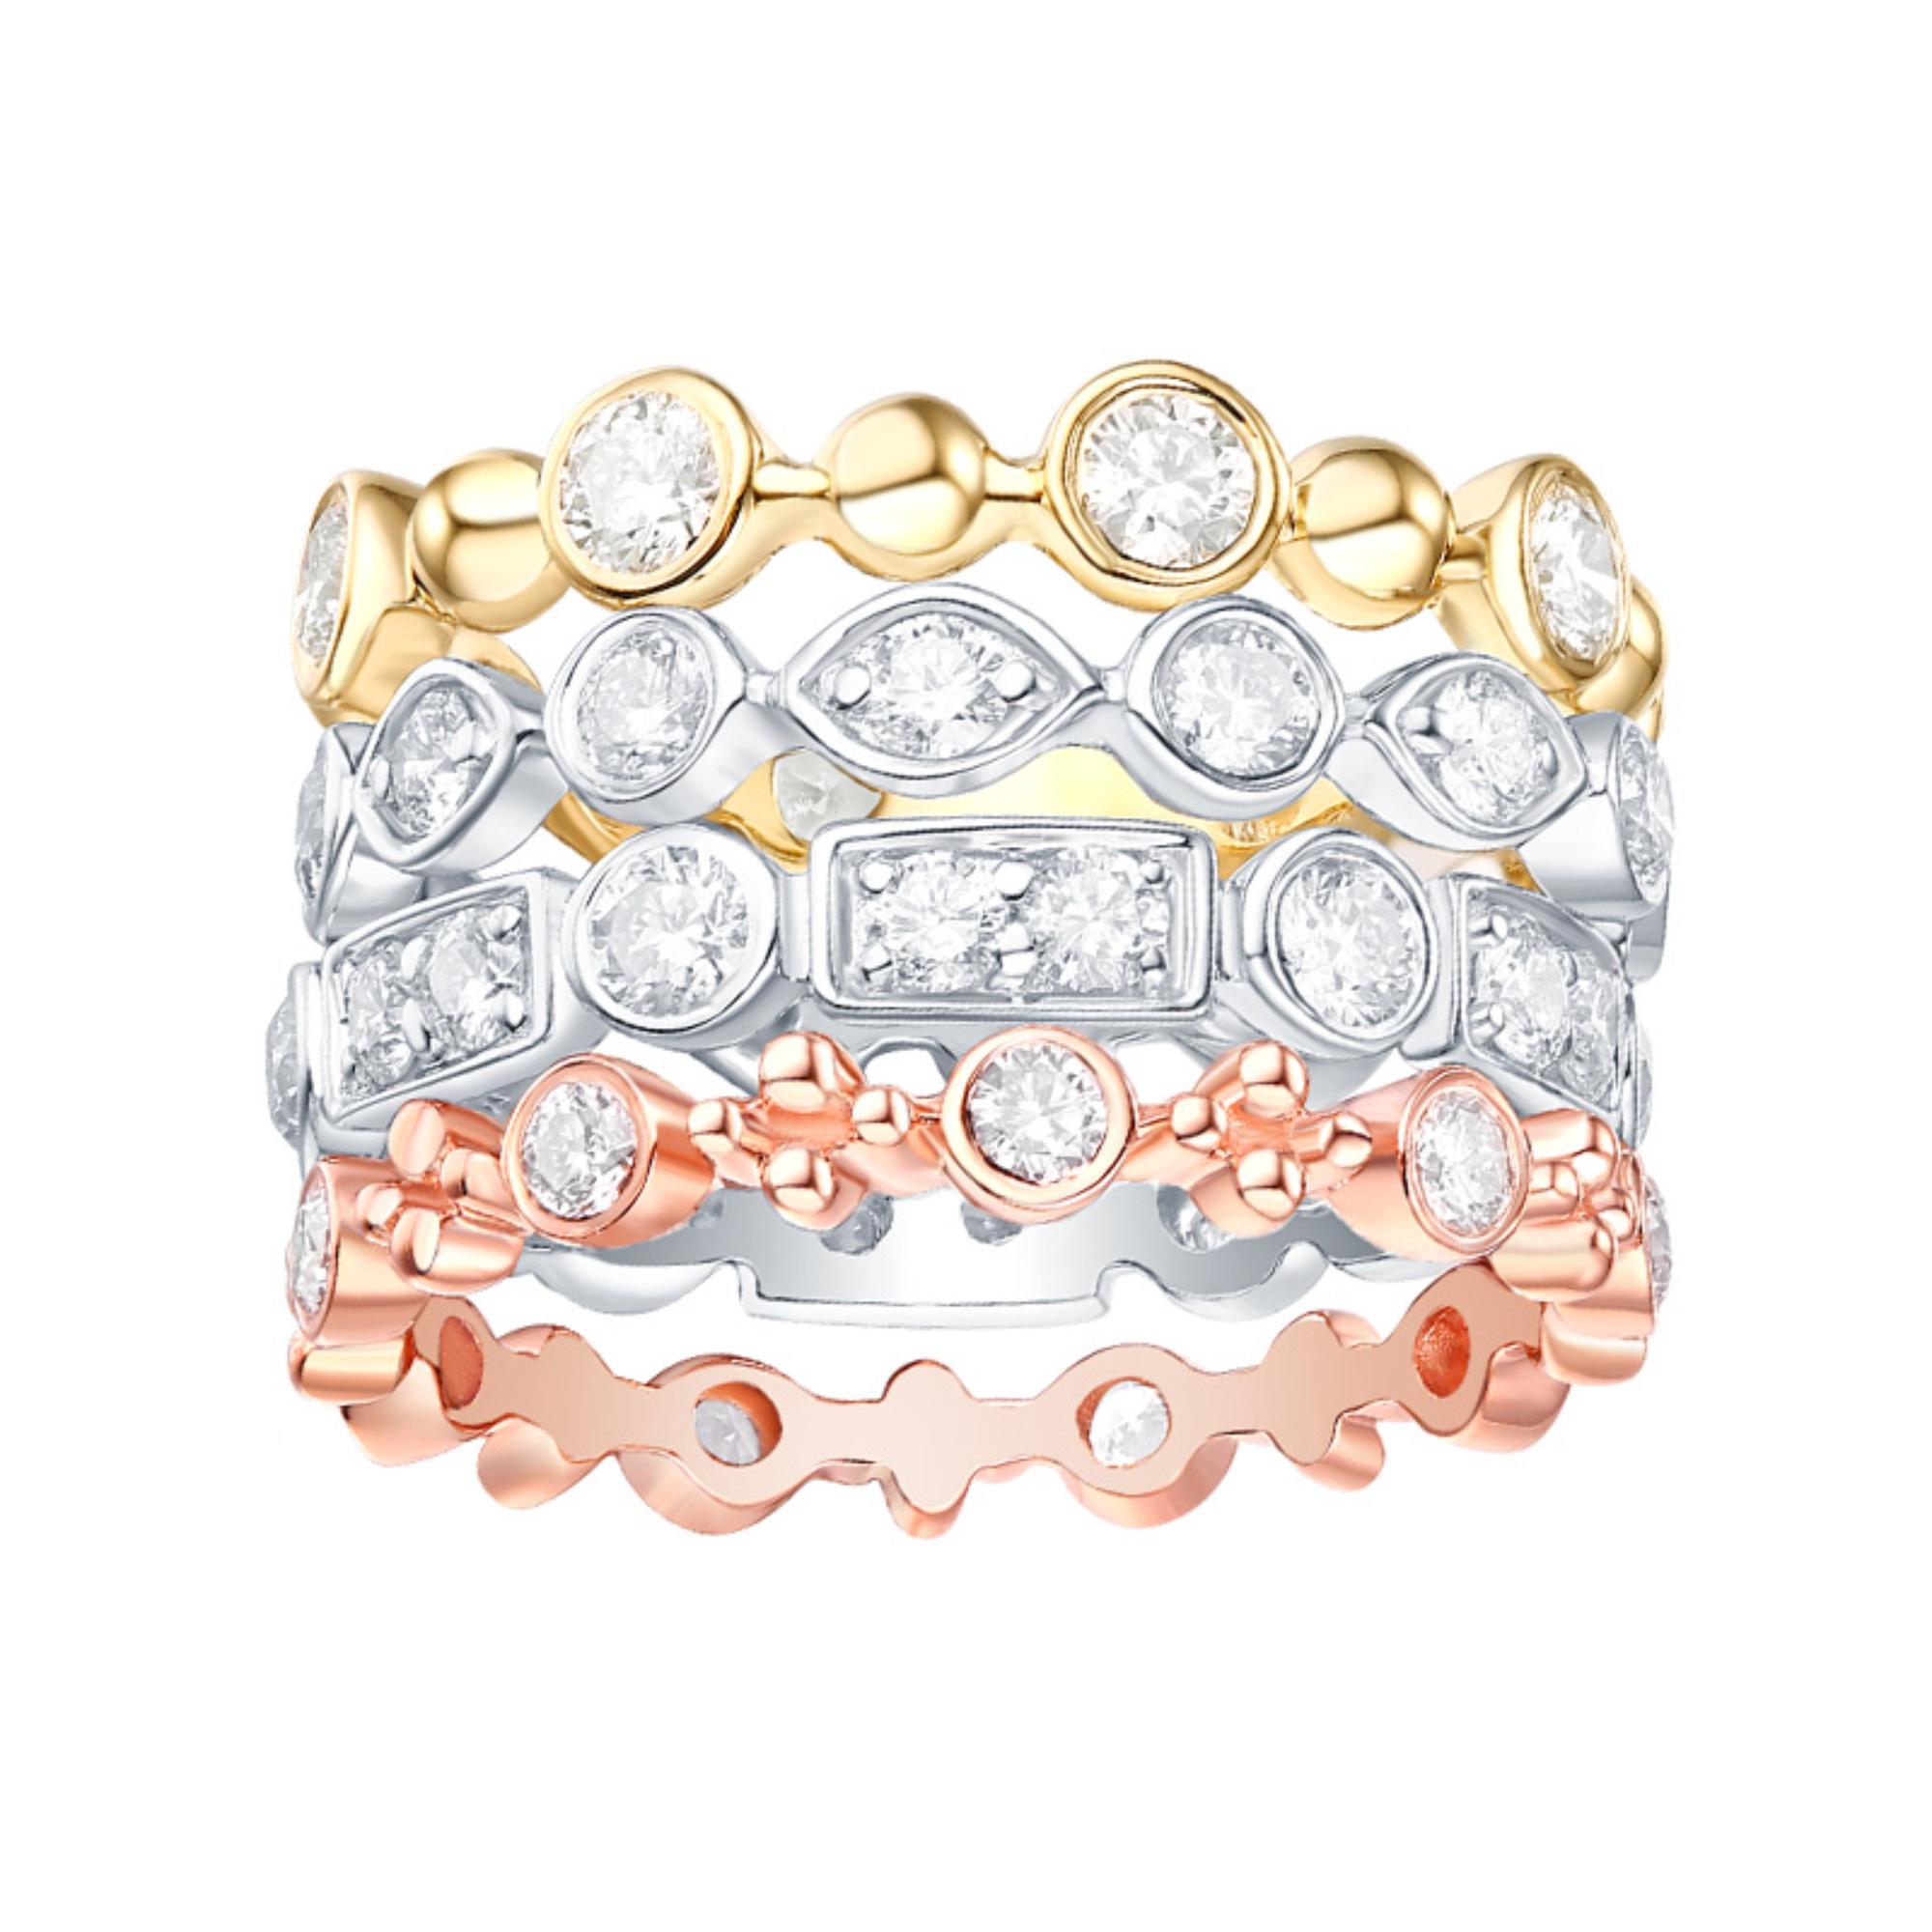 Dieser atemberaubende Diamantring zeichnet sich durch ein modernes Design mit vier Reihen von Baguette- und runden Diamanten in dreifarbigem 14-karätigem Gold aus. Die Diamanten sind elegant in eine Lünette gefasst und verleihen ihr ein